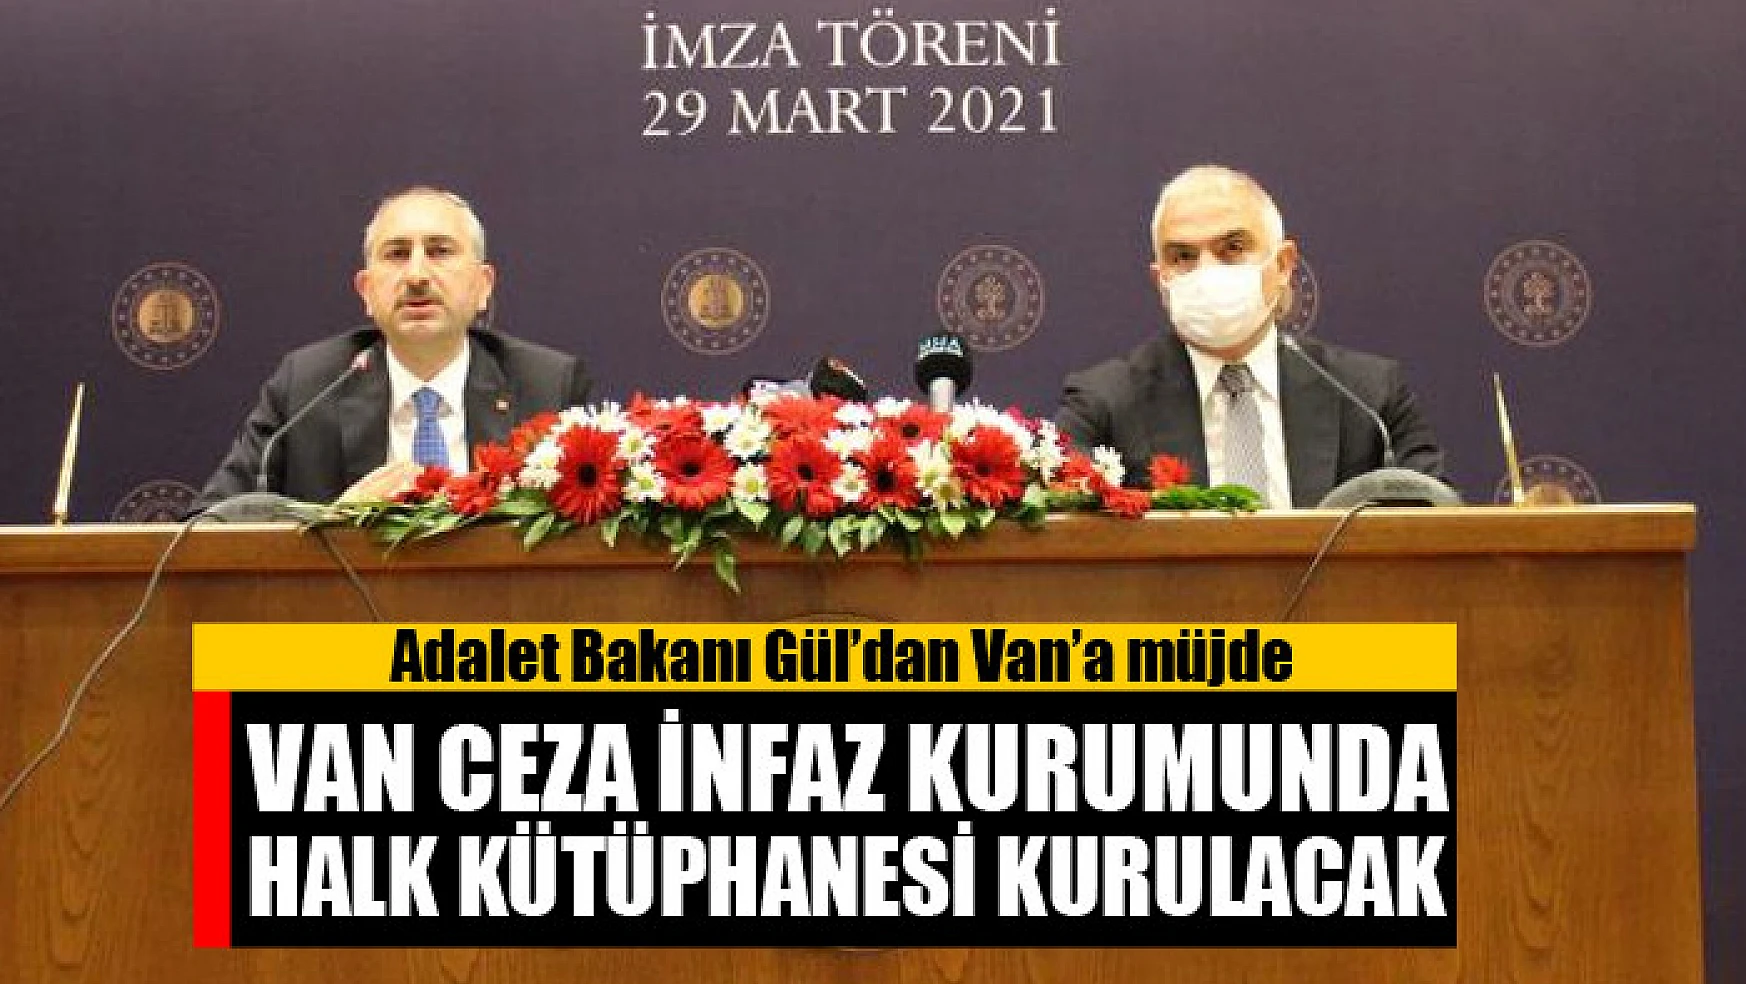 Adalet Bakanı Gül'dan Van'a müjde Van Ceza İnfaz Kurumunda halk kütüphanesi kurulacak 